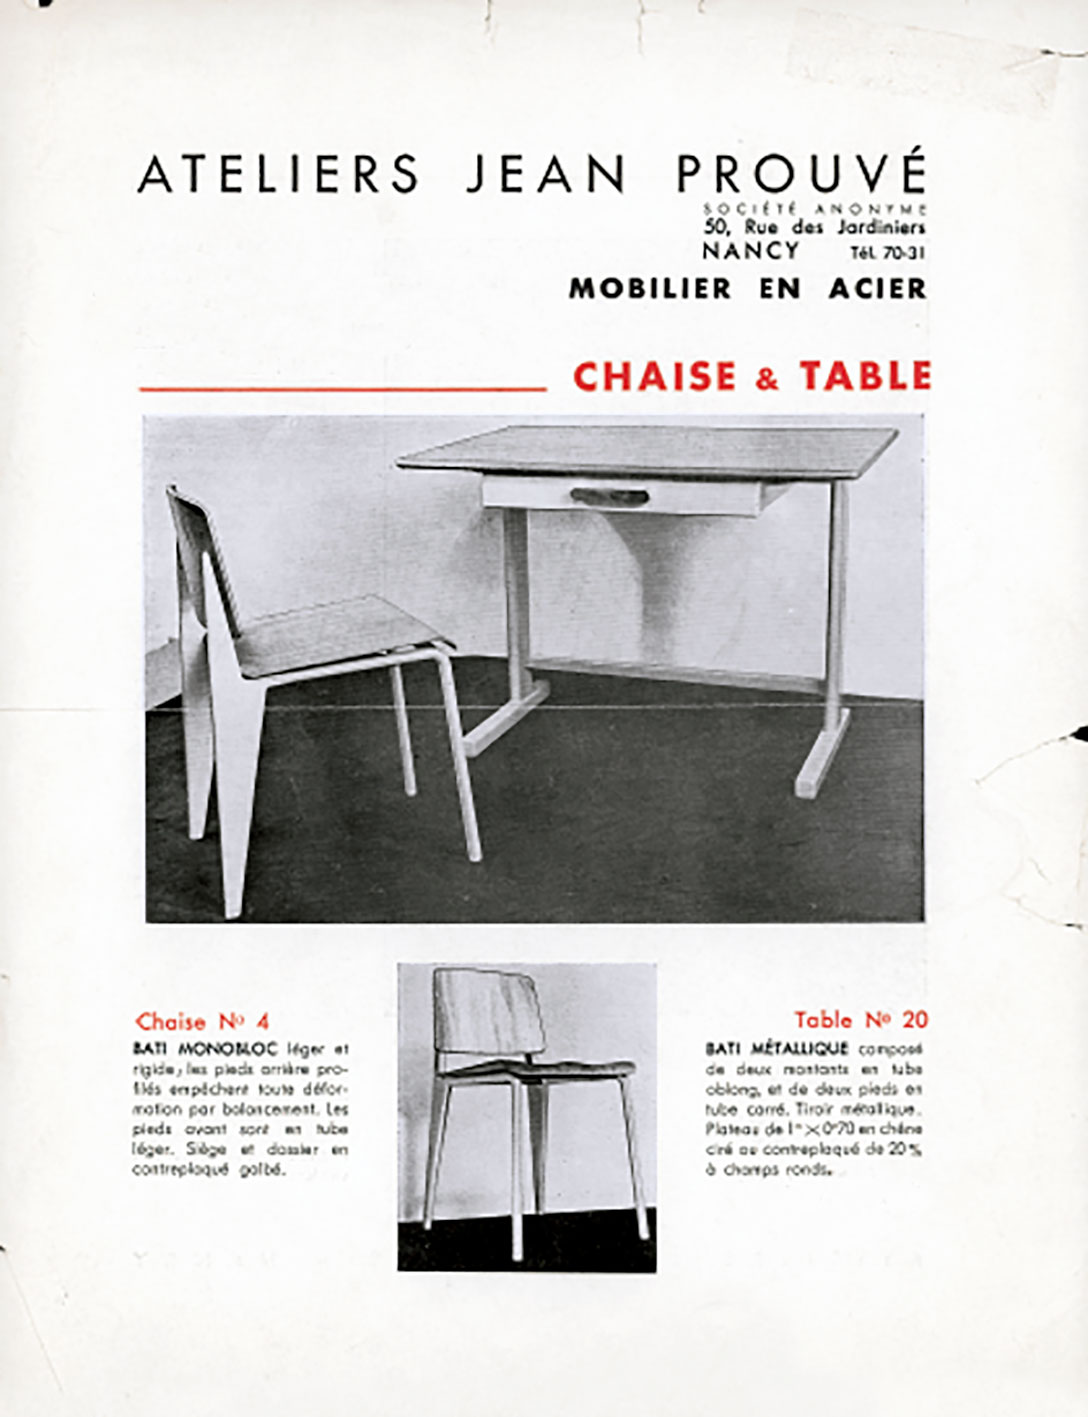 Brochure publicitaire <i>Ateliers Jean Prouvé, mobilier en acier,</i> Nancy, c. 1935.